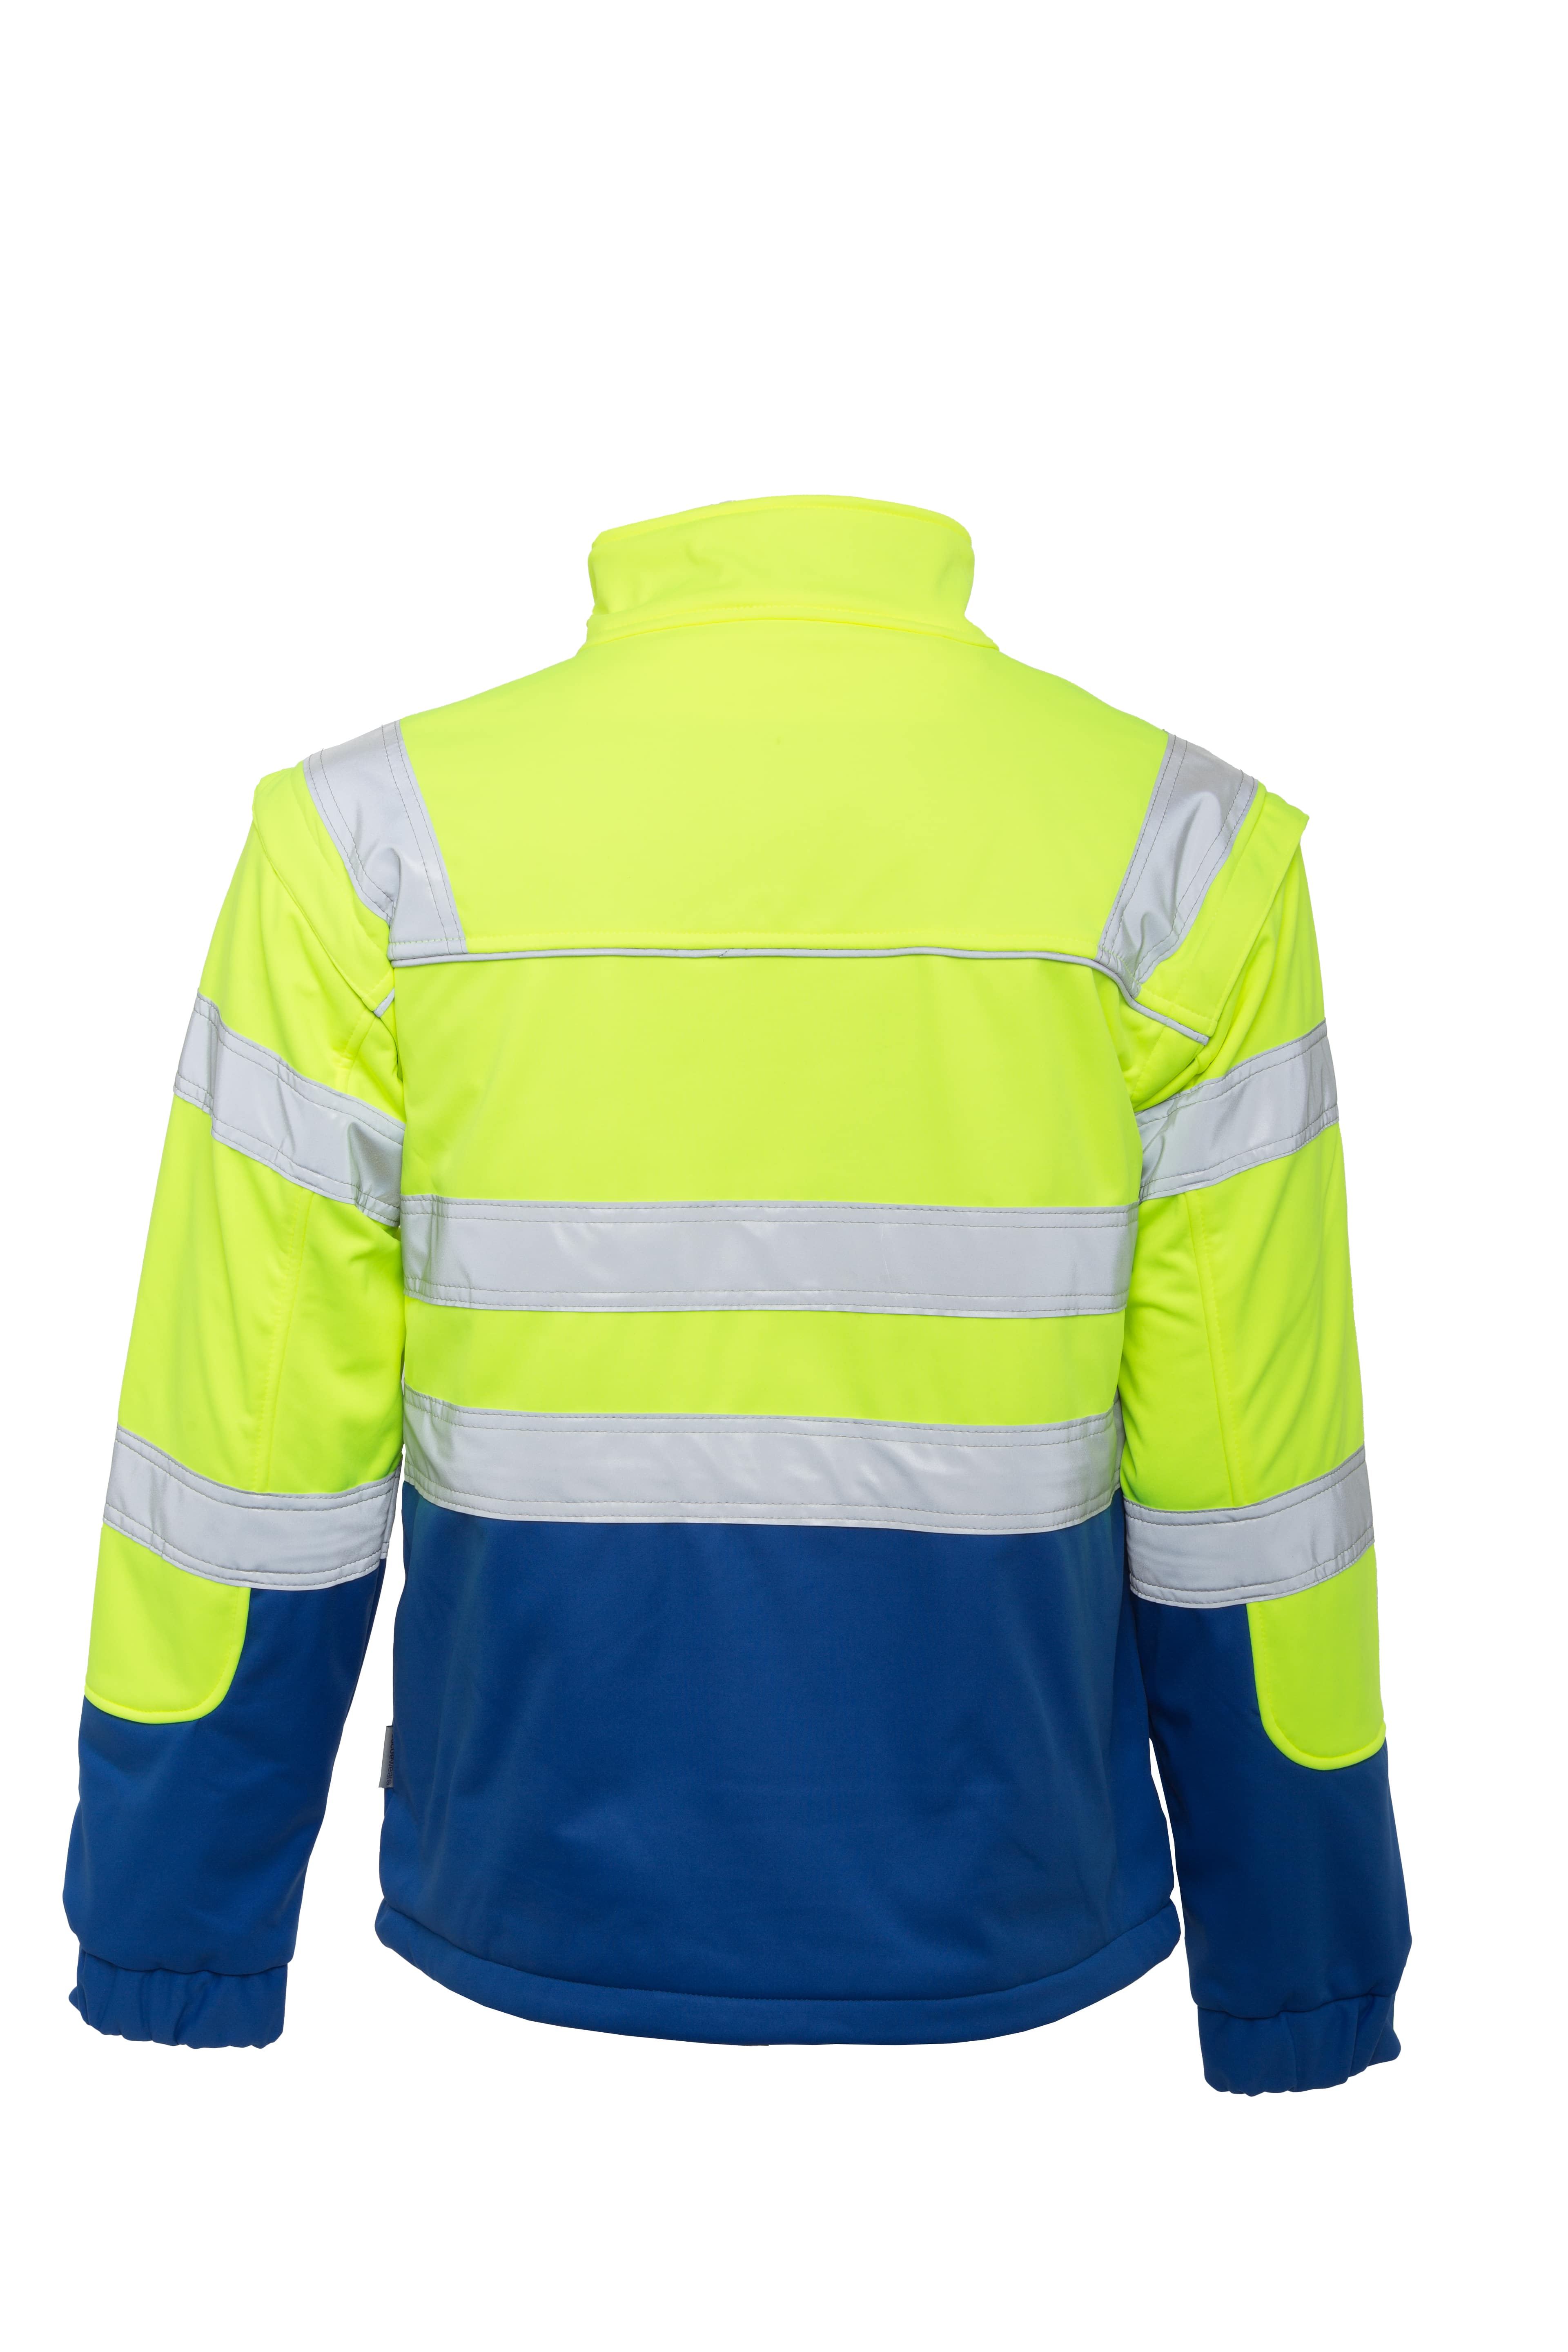 Rescuewear Softshelljacke HiVis Klasse 3 Kobaltblau / Neon Gelb - M